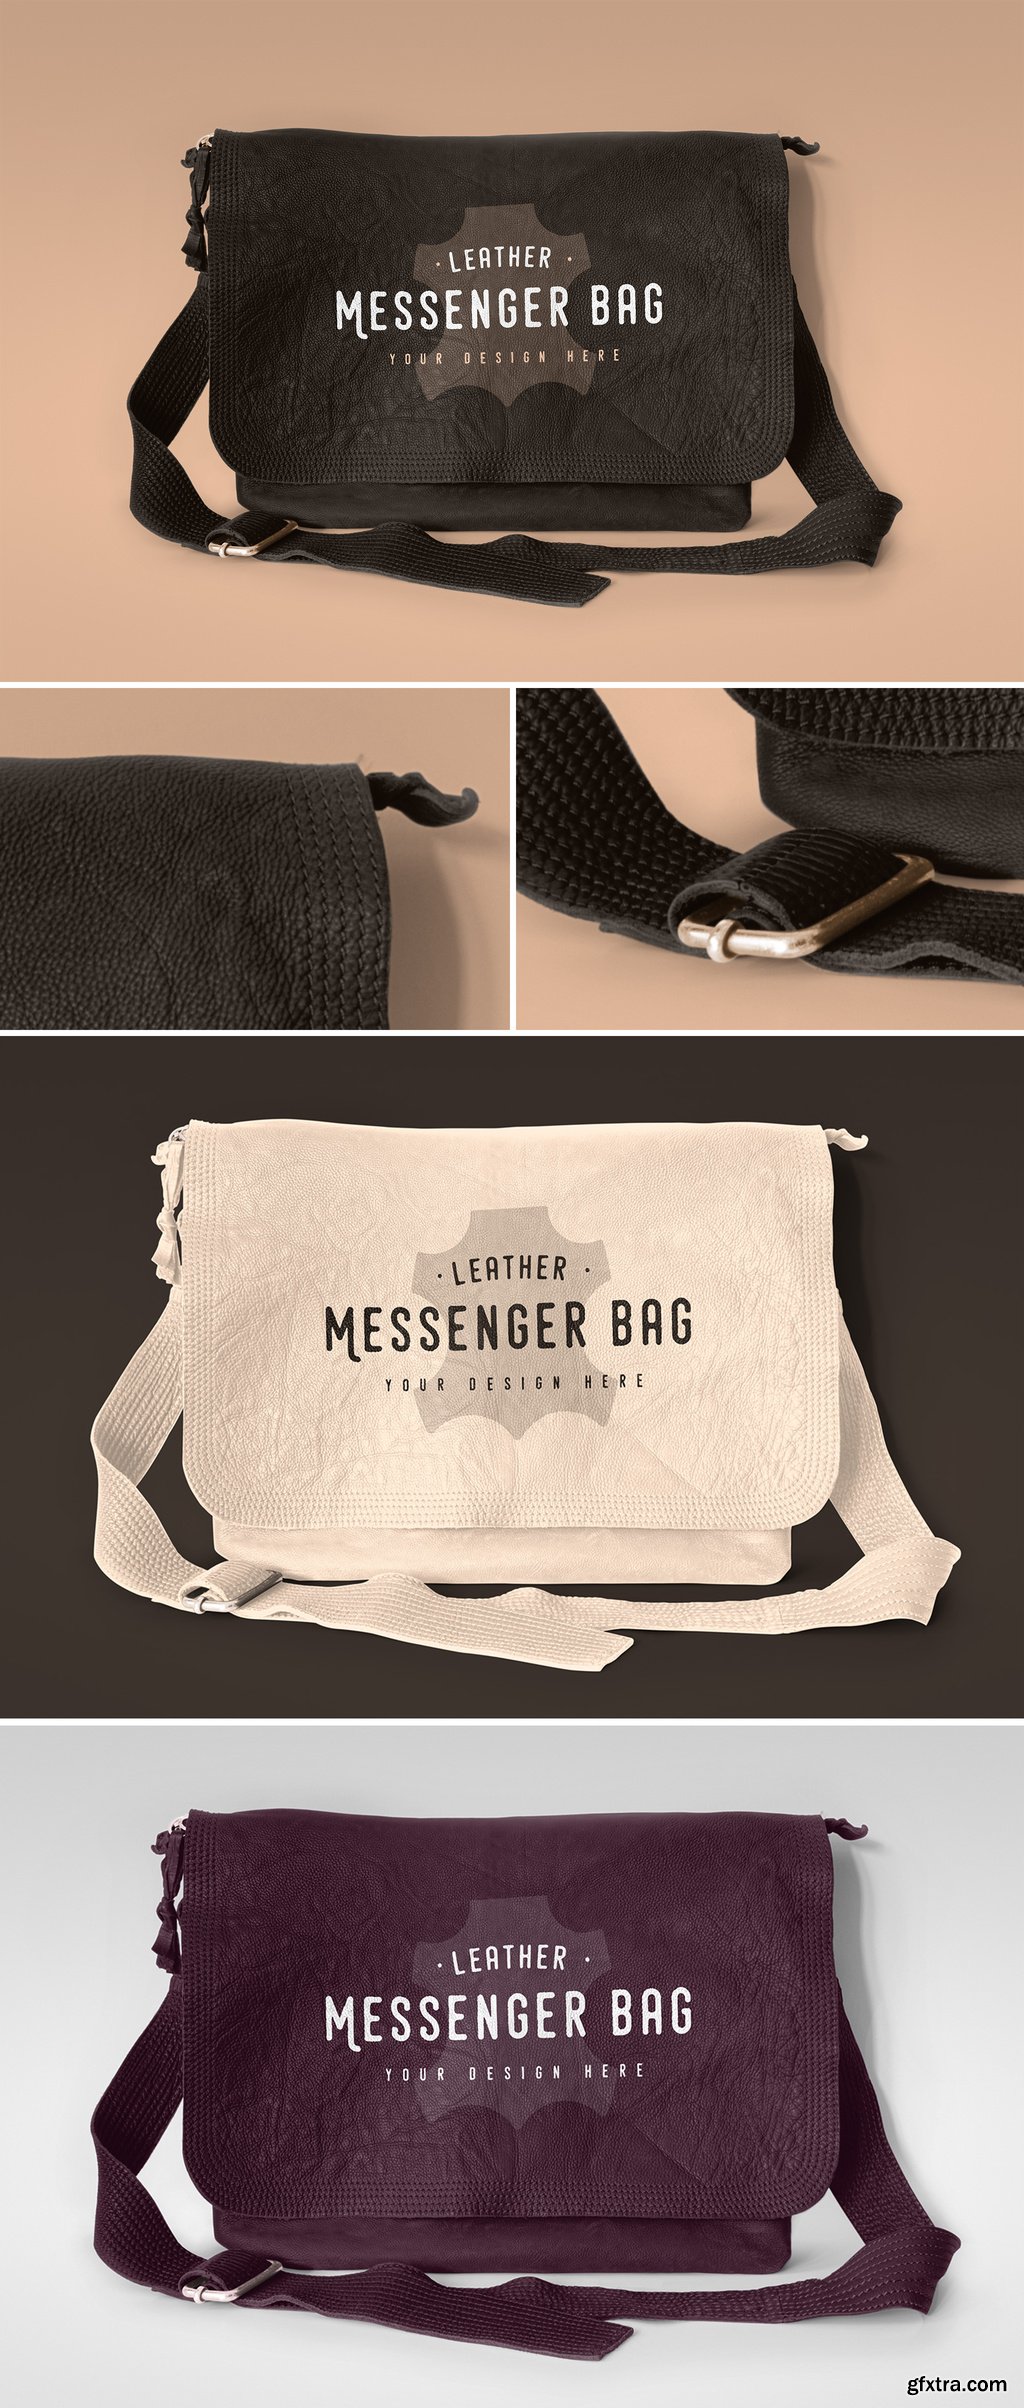 Leather Messenger Bag Mockup 369526354 » GFxtra